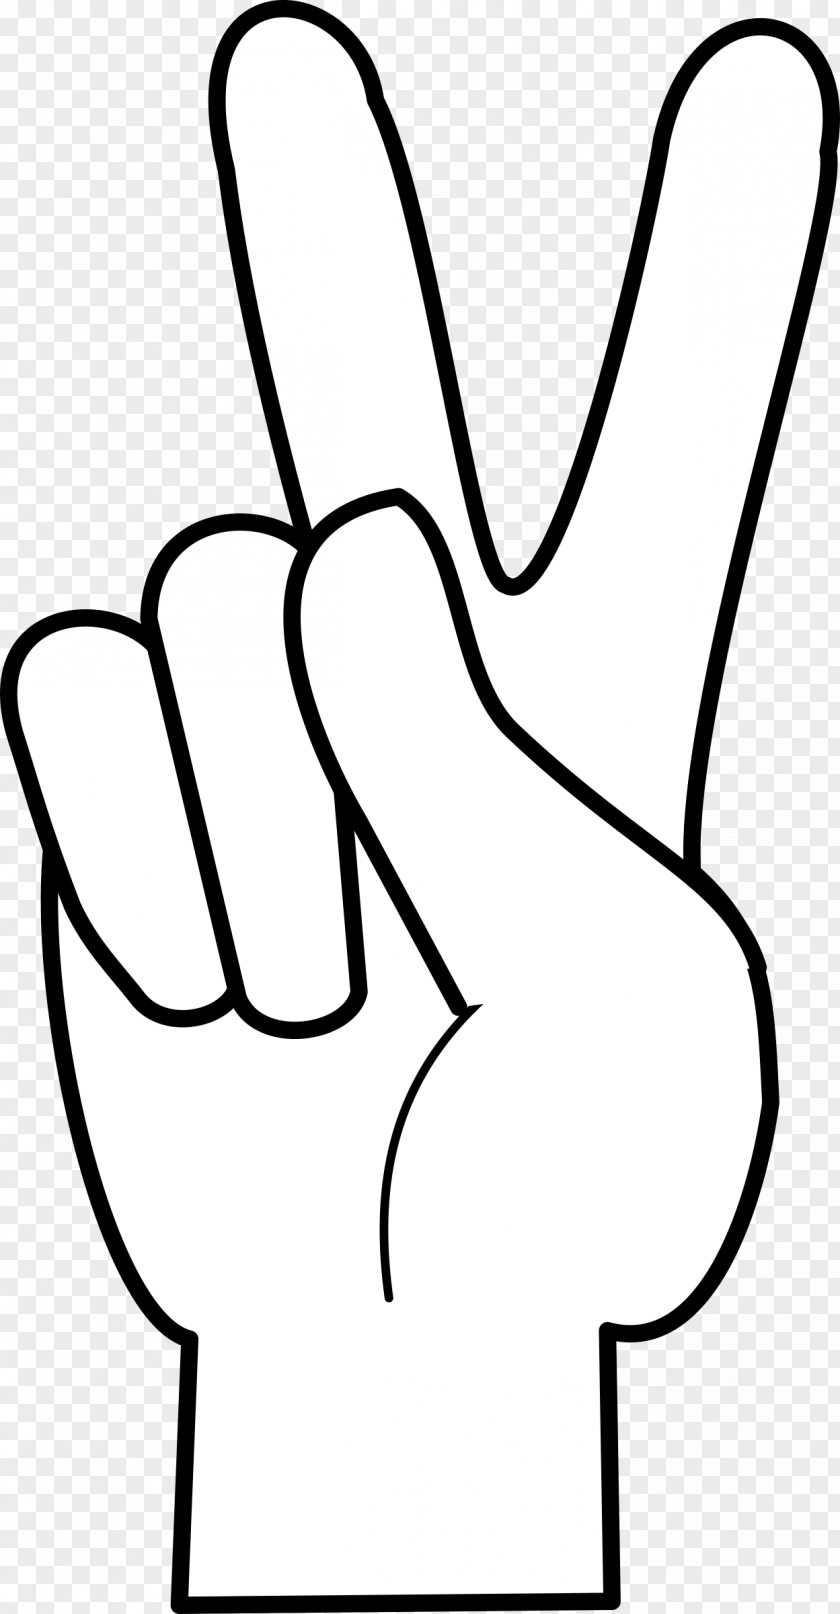 Symbol Peace Symbols V Sign Finger Clip Art PNG